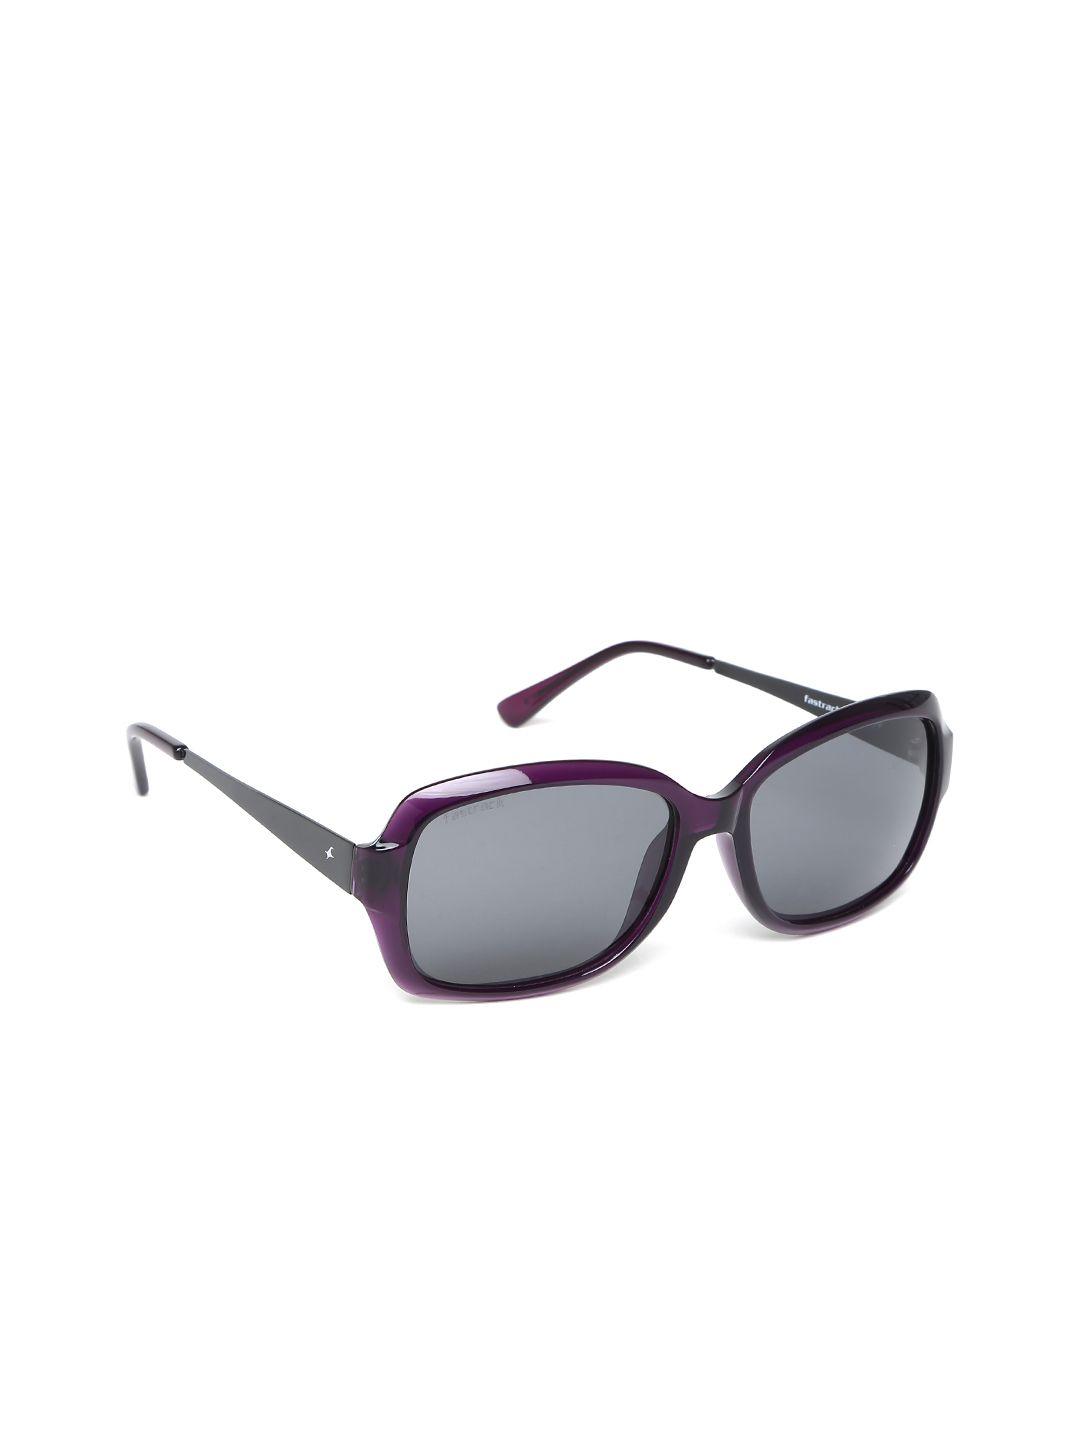 fastrack-women-sunglasses-p324bk1fp